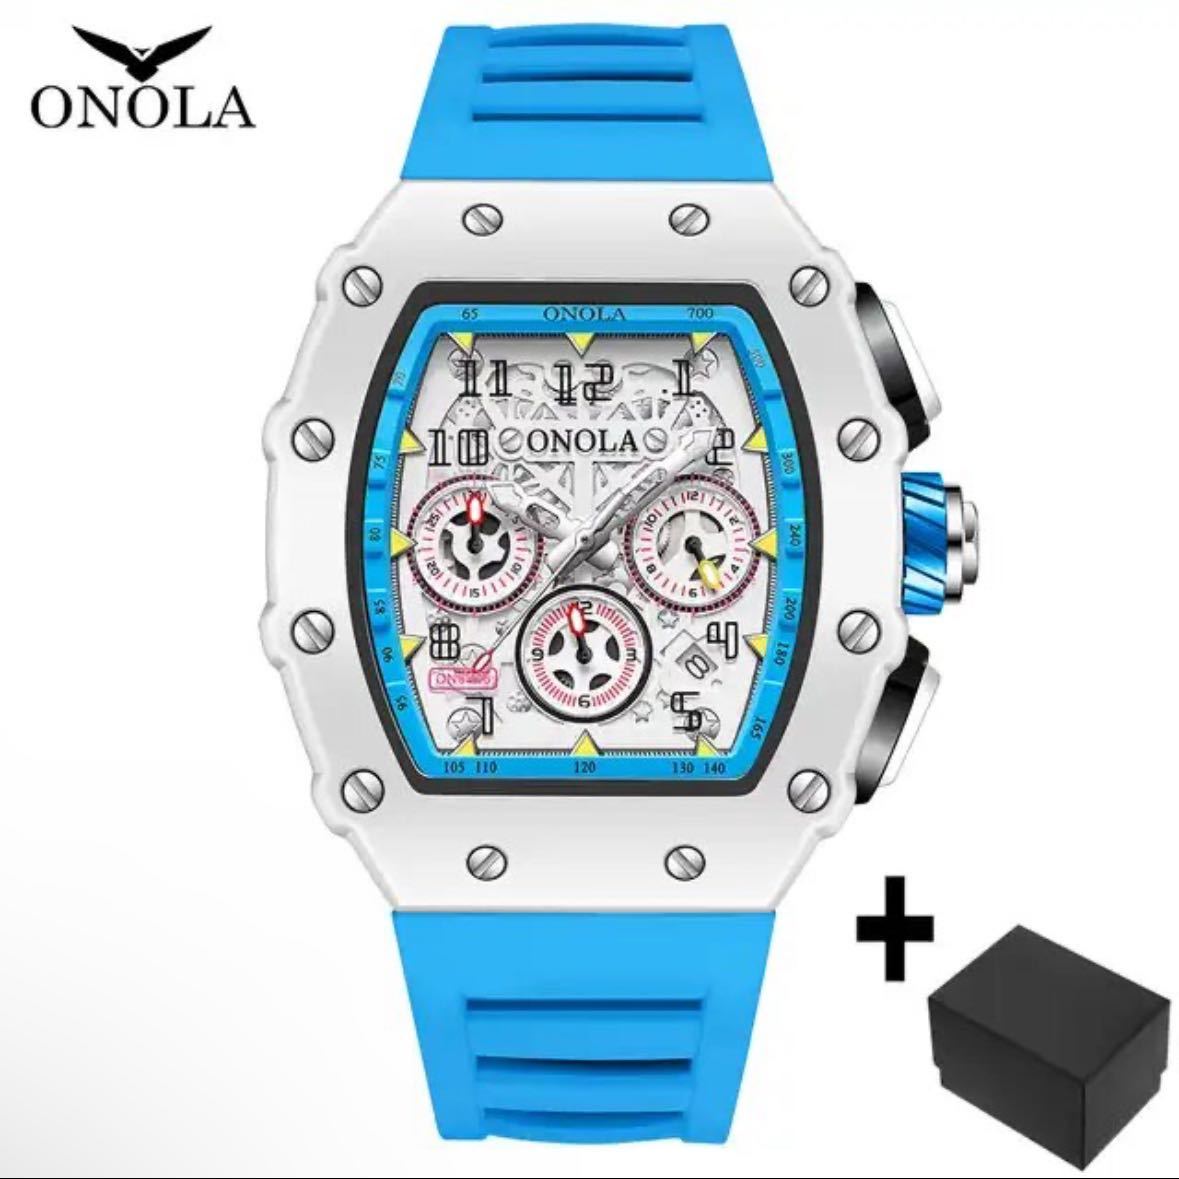 【日本未発売 アメリカ価格30,000円】ONOLA リシャールオマージュ クロノグラフ搭載 クォーツ腕時計 ラバーベルト メンズ腕時計